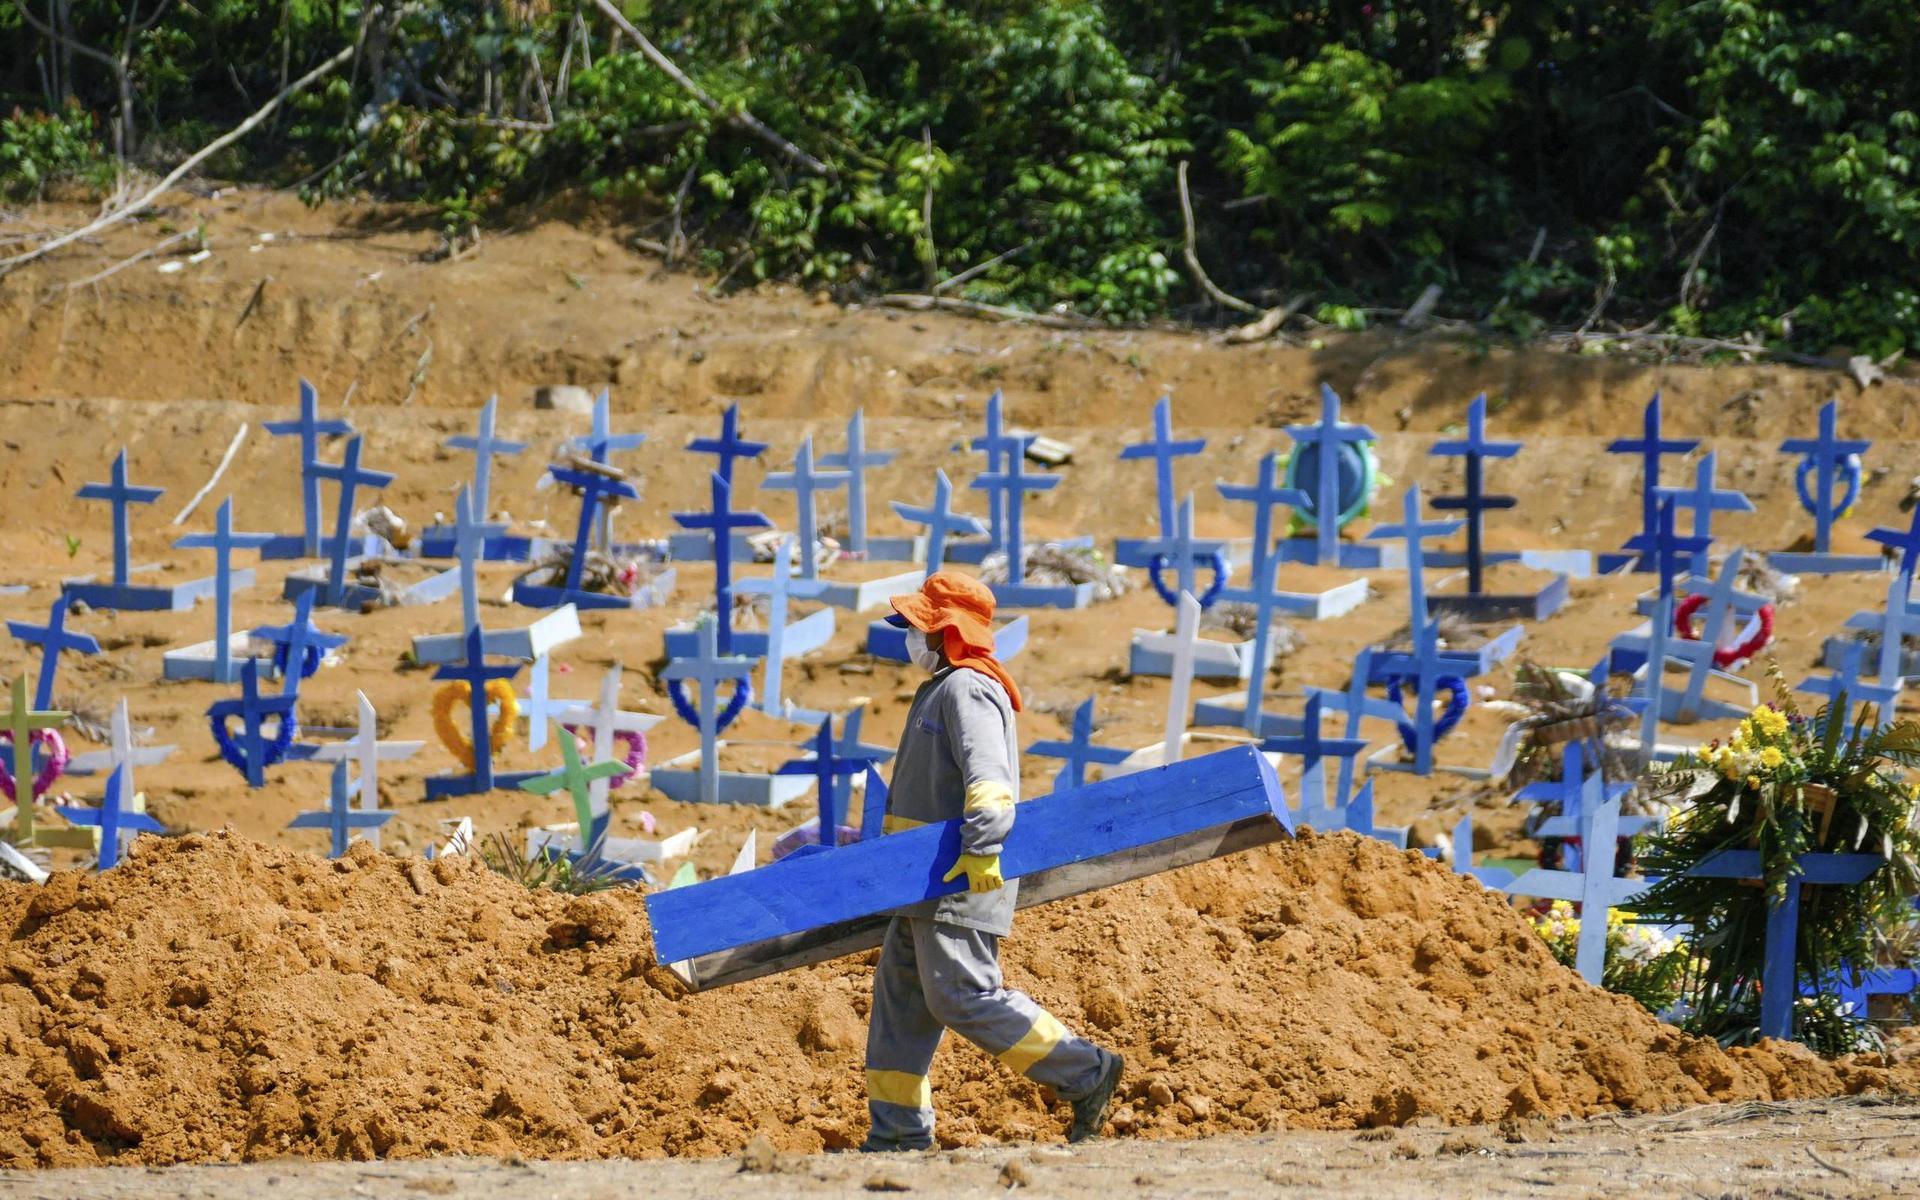 Begravningsplatsen Nossa Senhora Aparecida i Manaus i Brasilien, en onsdag morgon. Sjukhuset Delphina Aziz har nått 98 procent av sin maxkapacitet för intensivvård av covid 19-patienter. Syrgas saknas på många sjukhus i regionen.